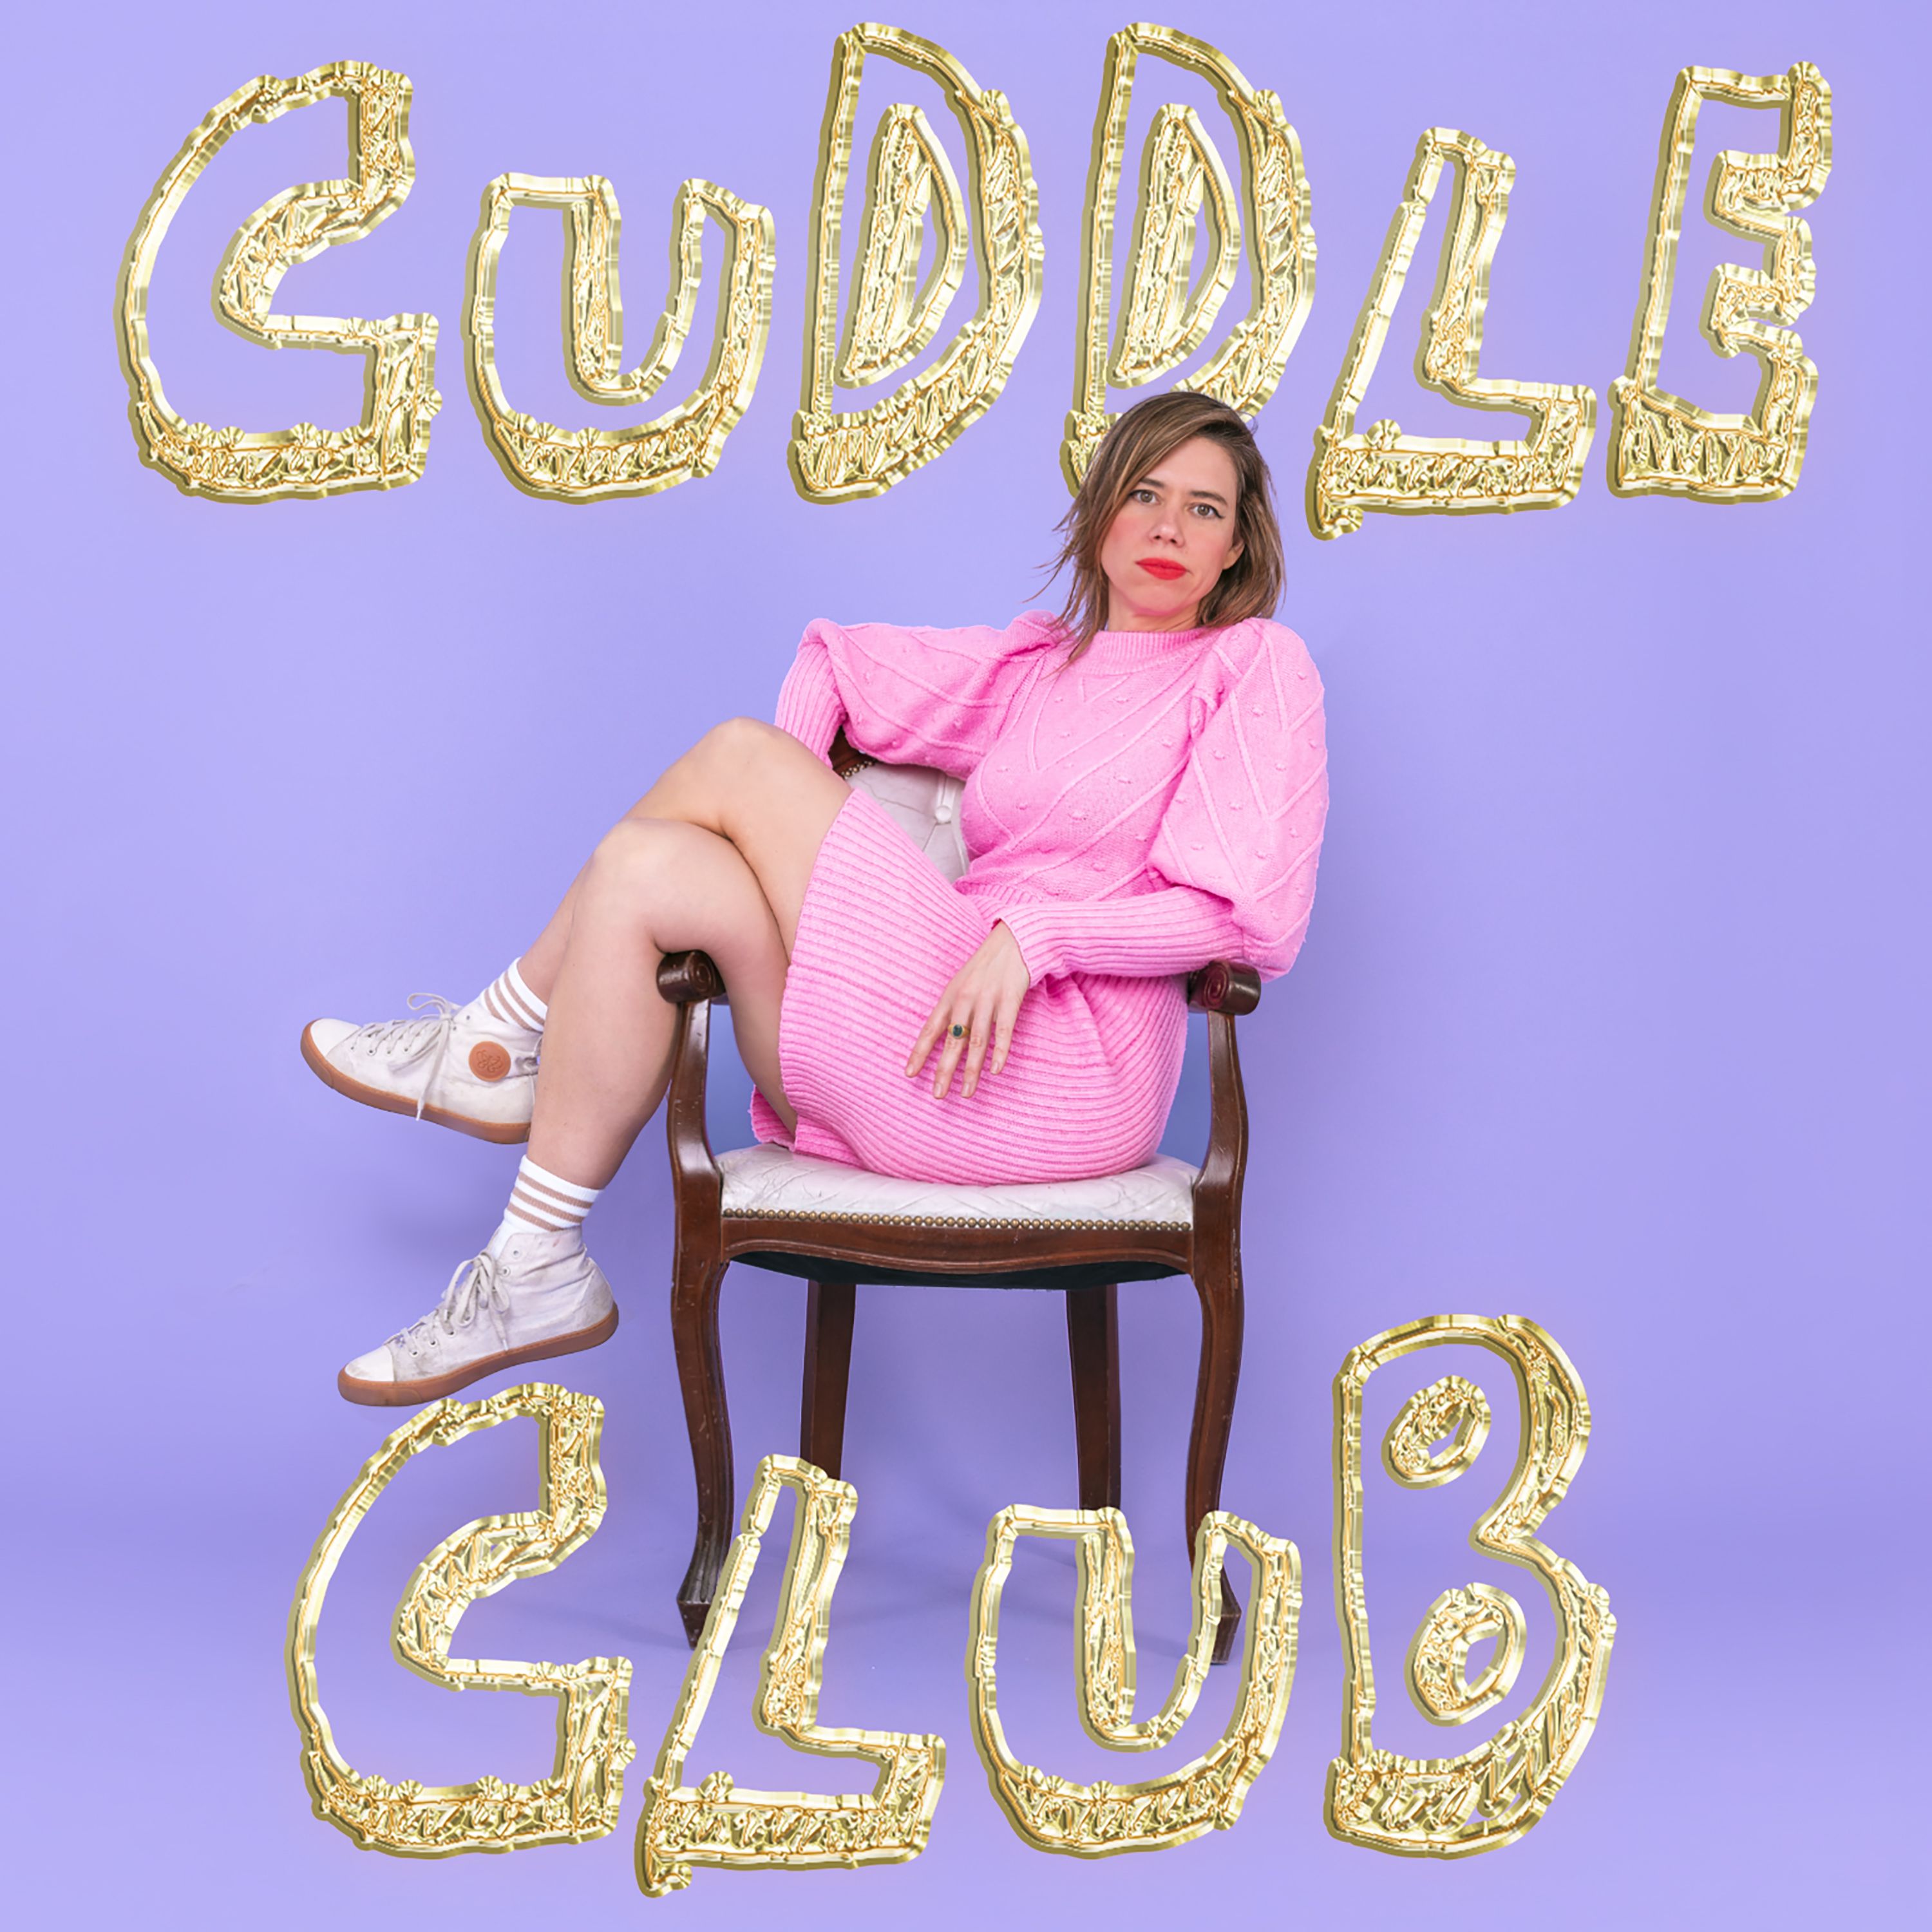 Ep 35: Sara Barron & Geoff Lloyd • Cuddle Club with Lou Sanders